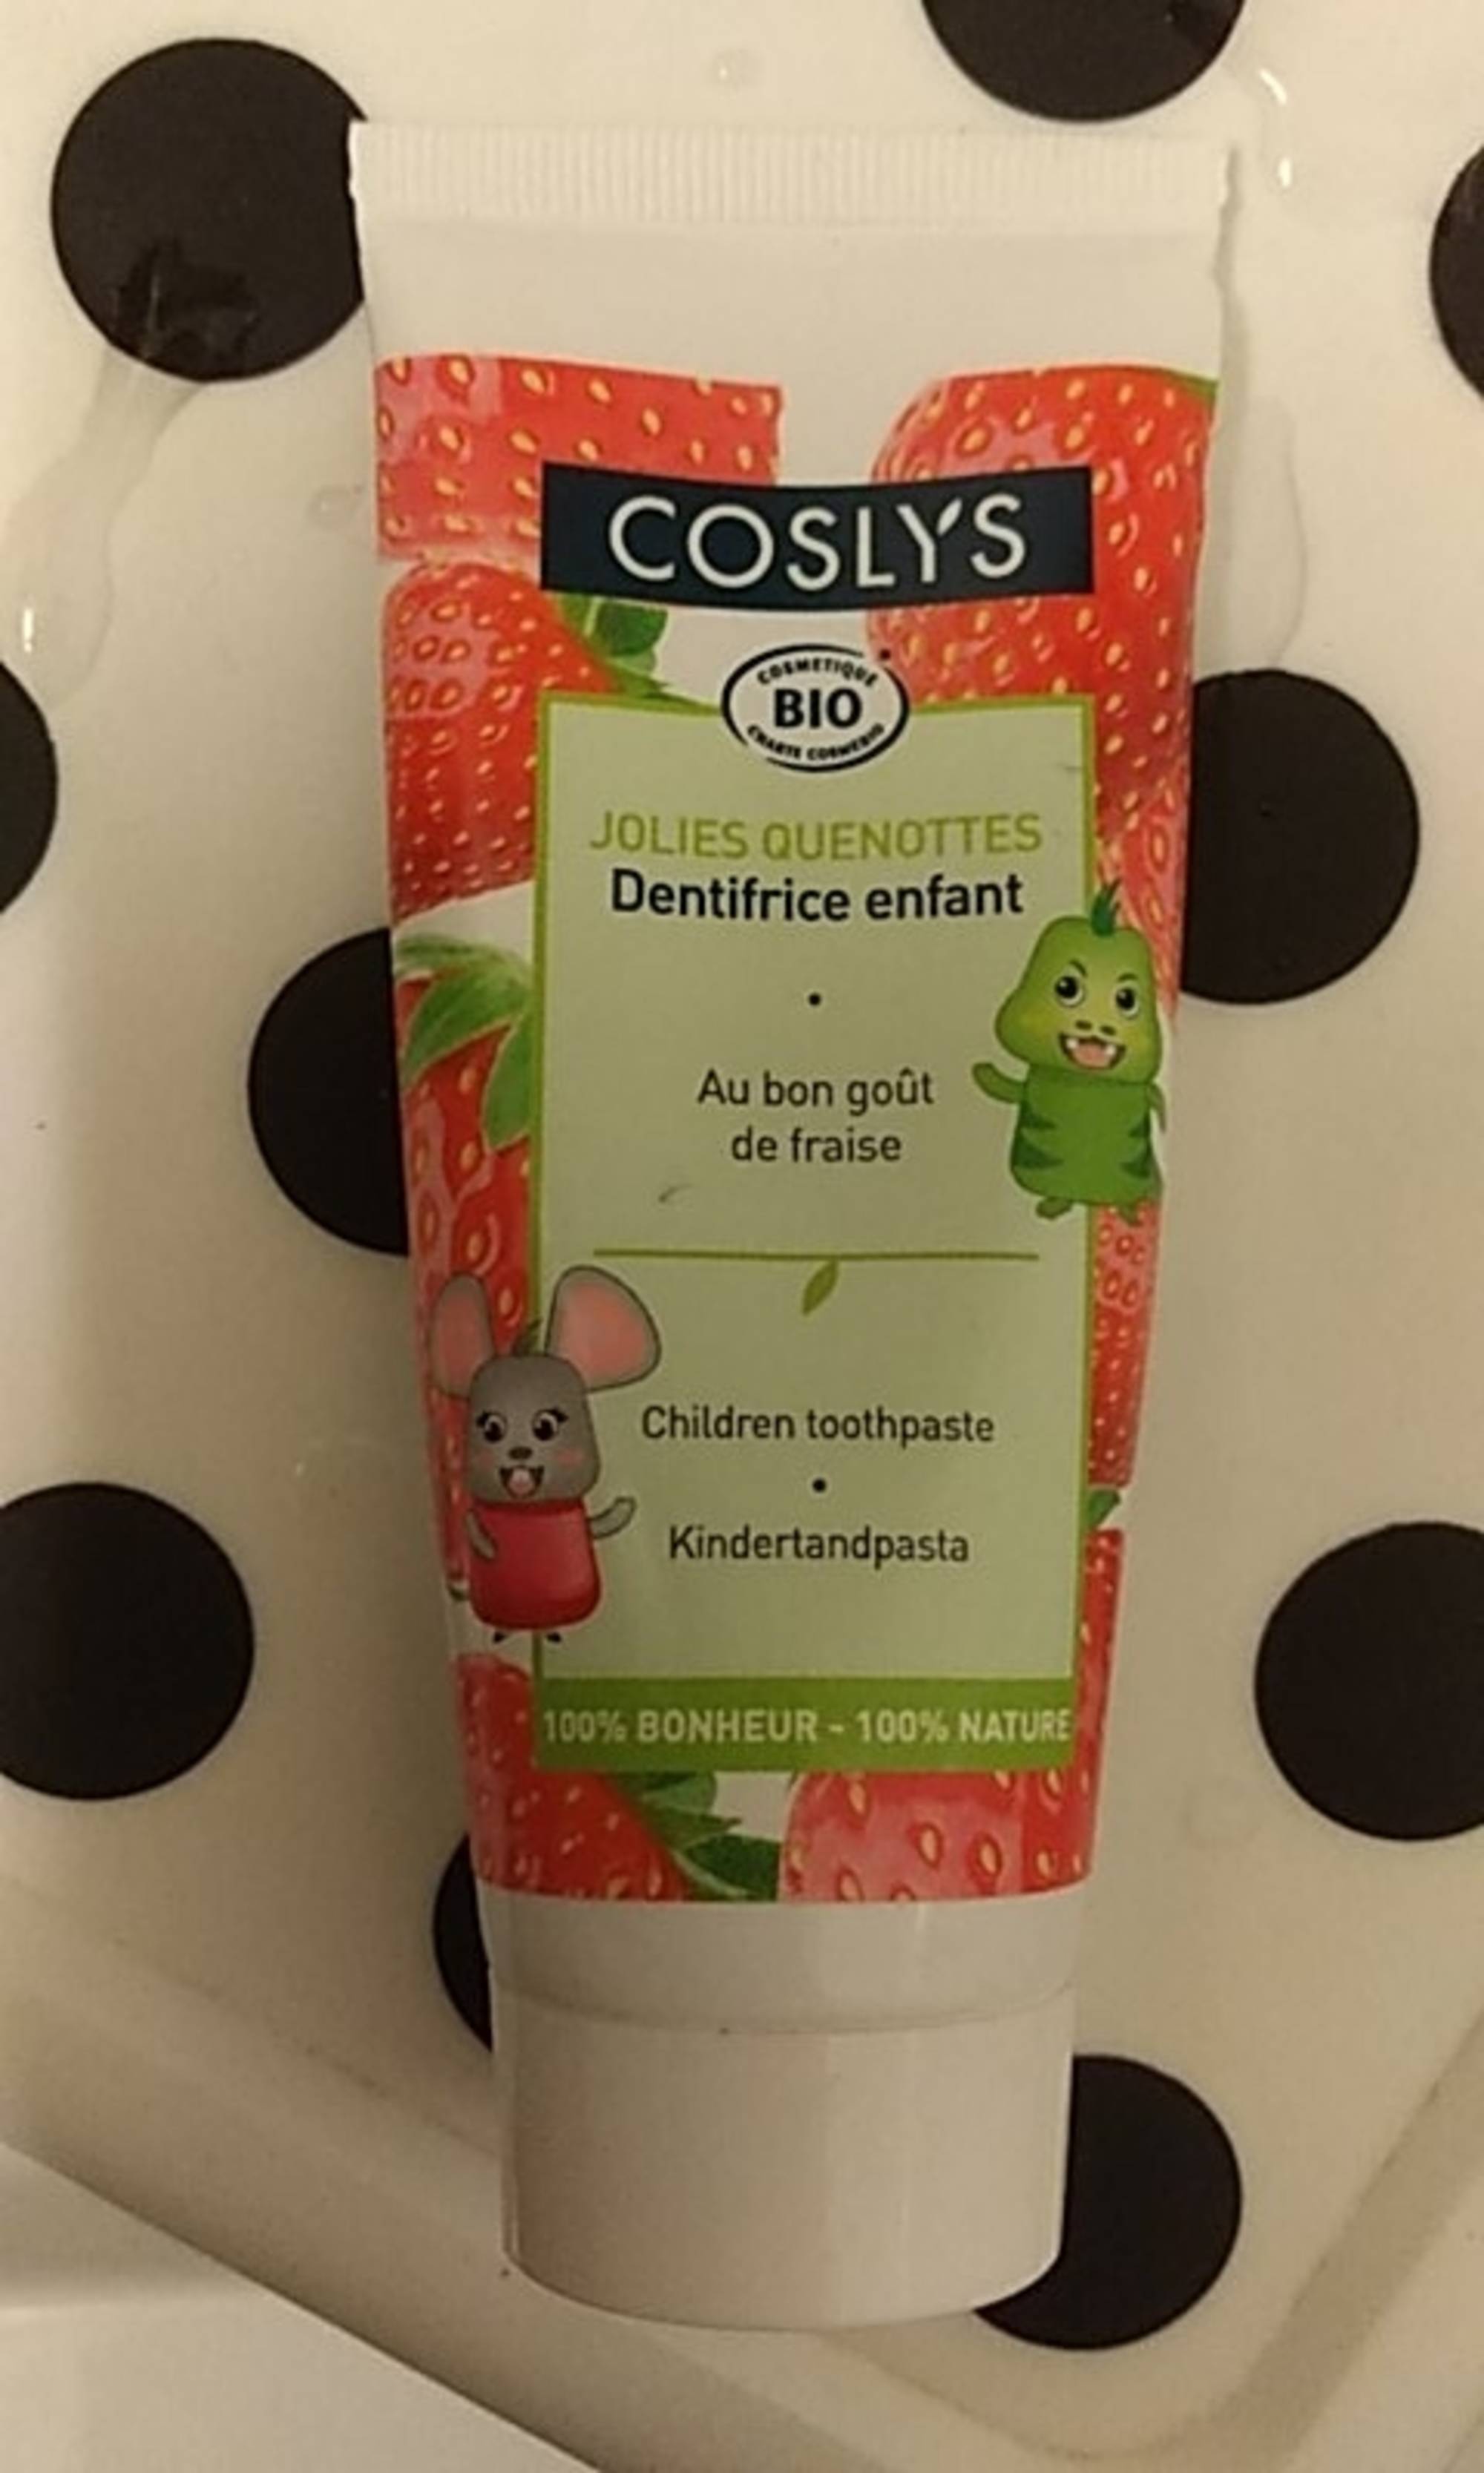 COSLYS - Jolies quenottes - Dentifrice bio au fraise